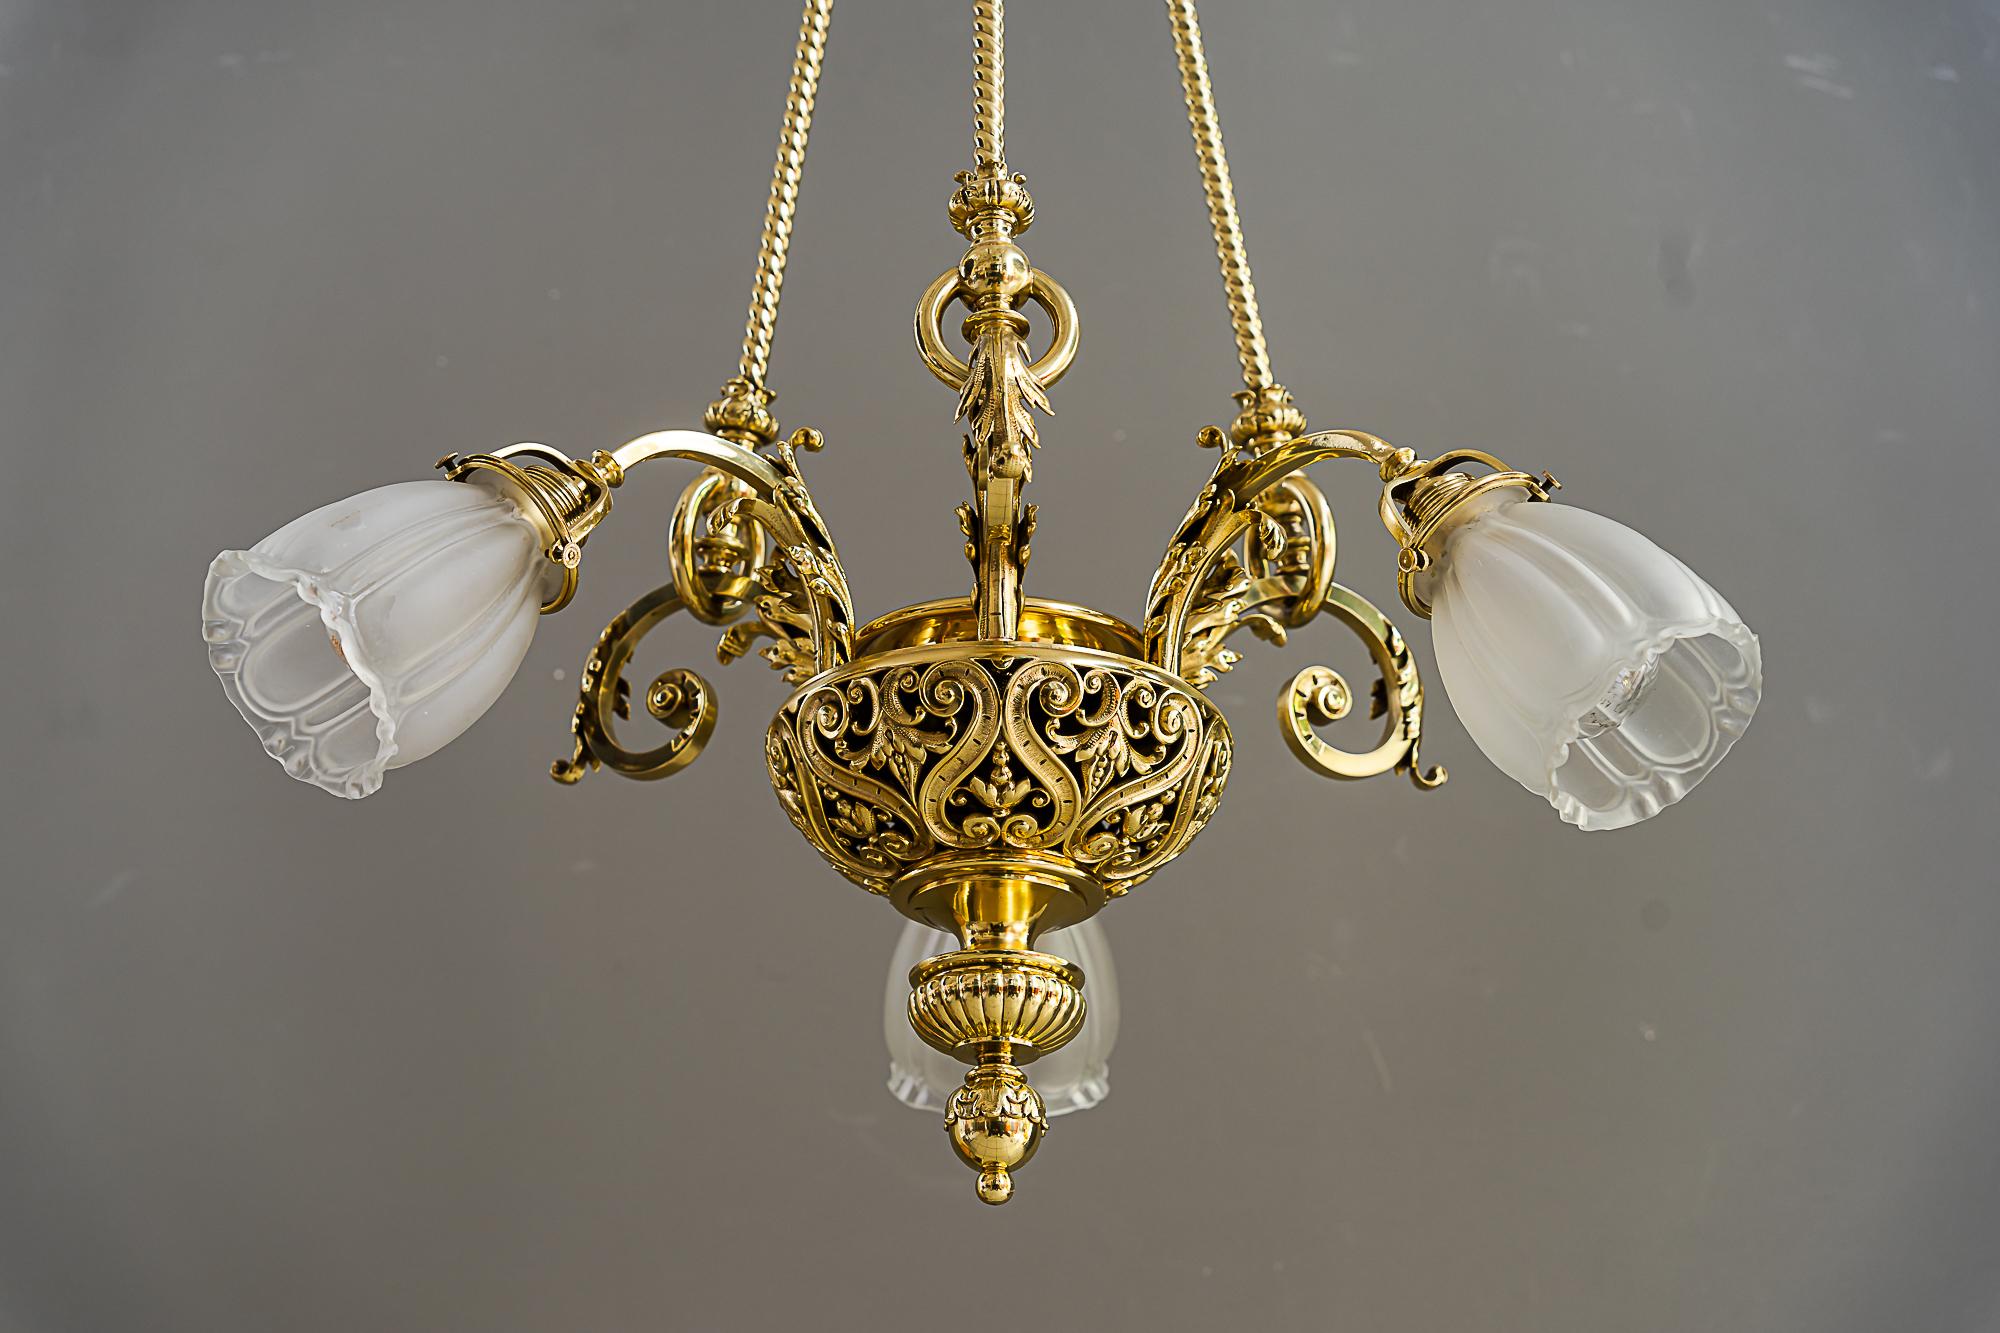 Brass Historic chandelier vienna around 1890s with original antique glass shades For Sale